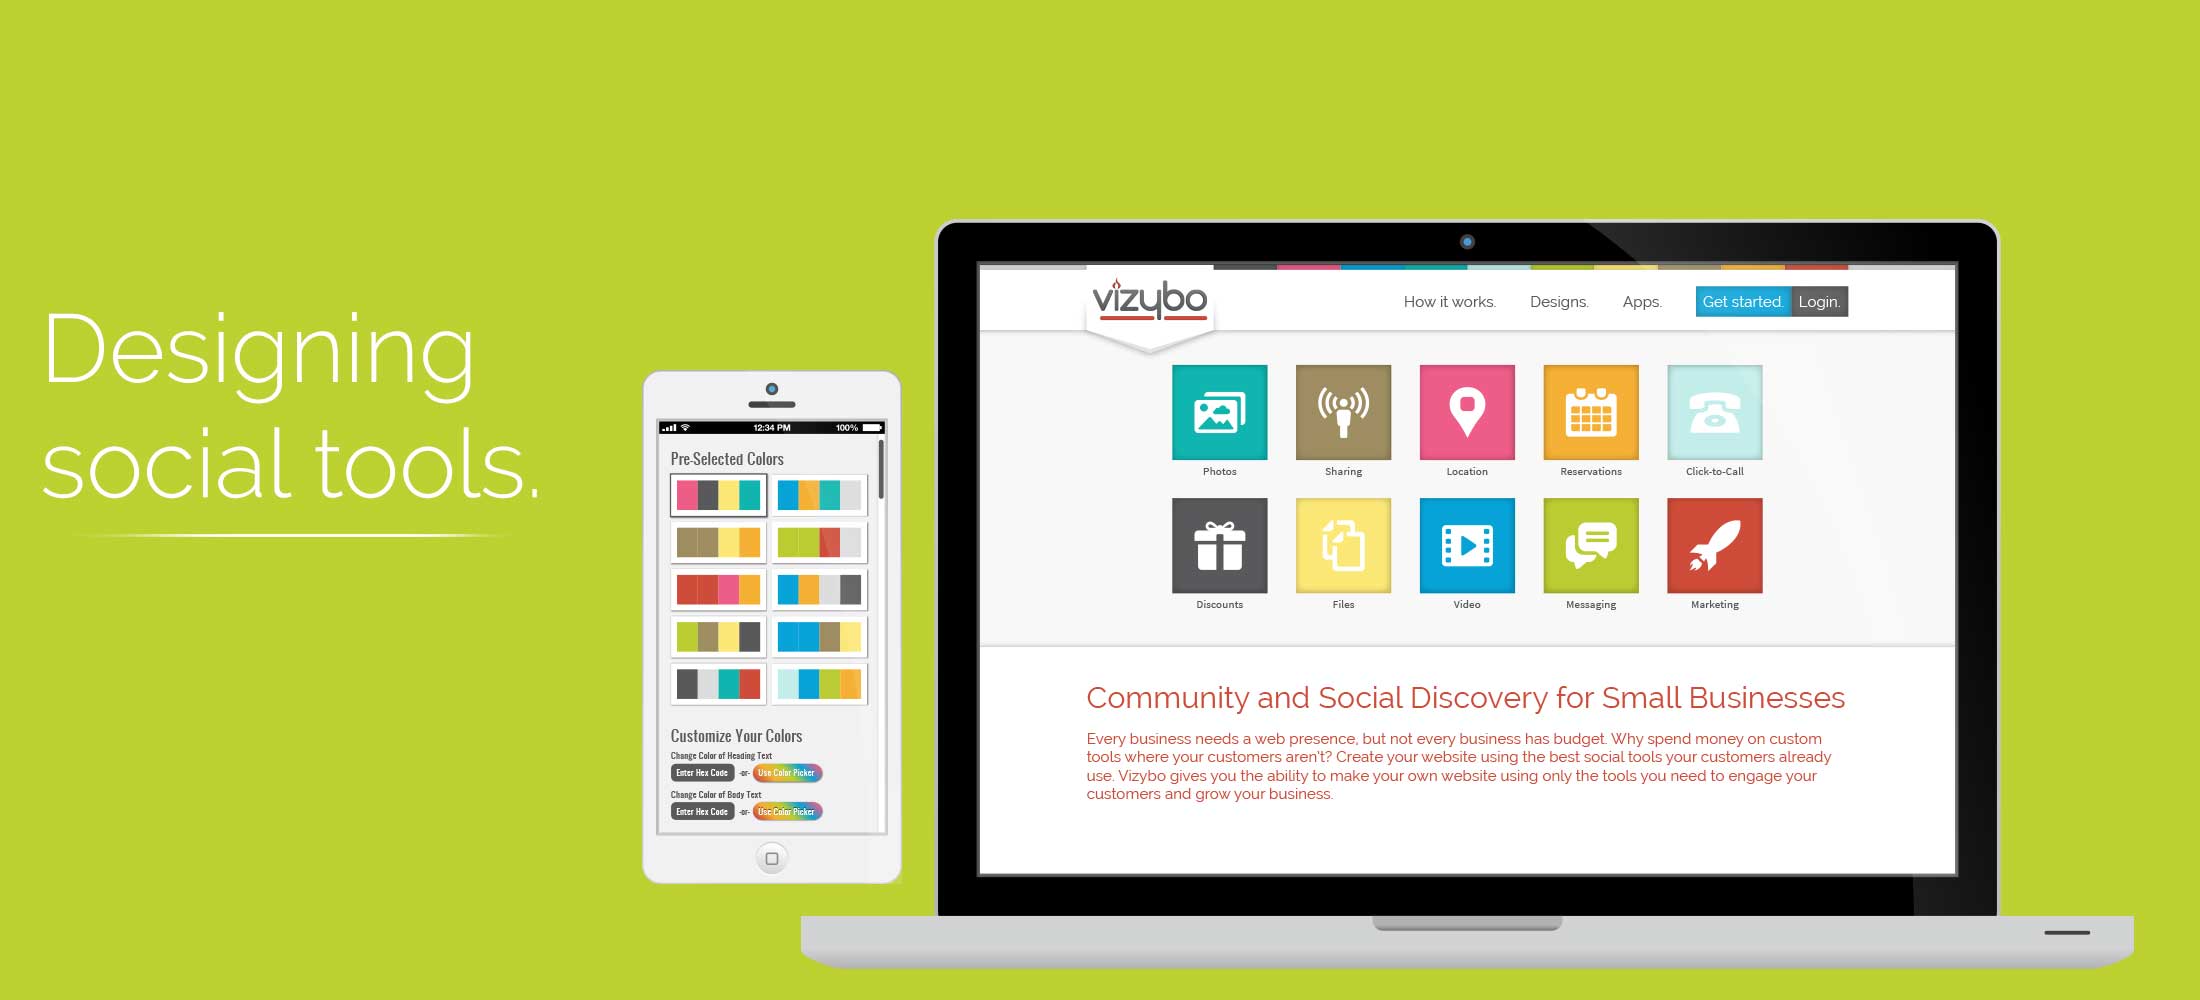 Vizybo: Designing Social Tools